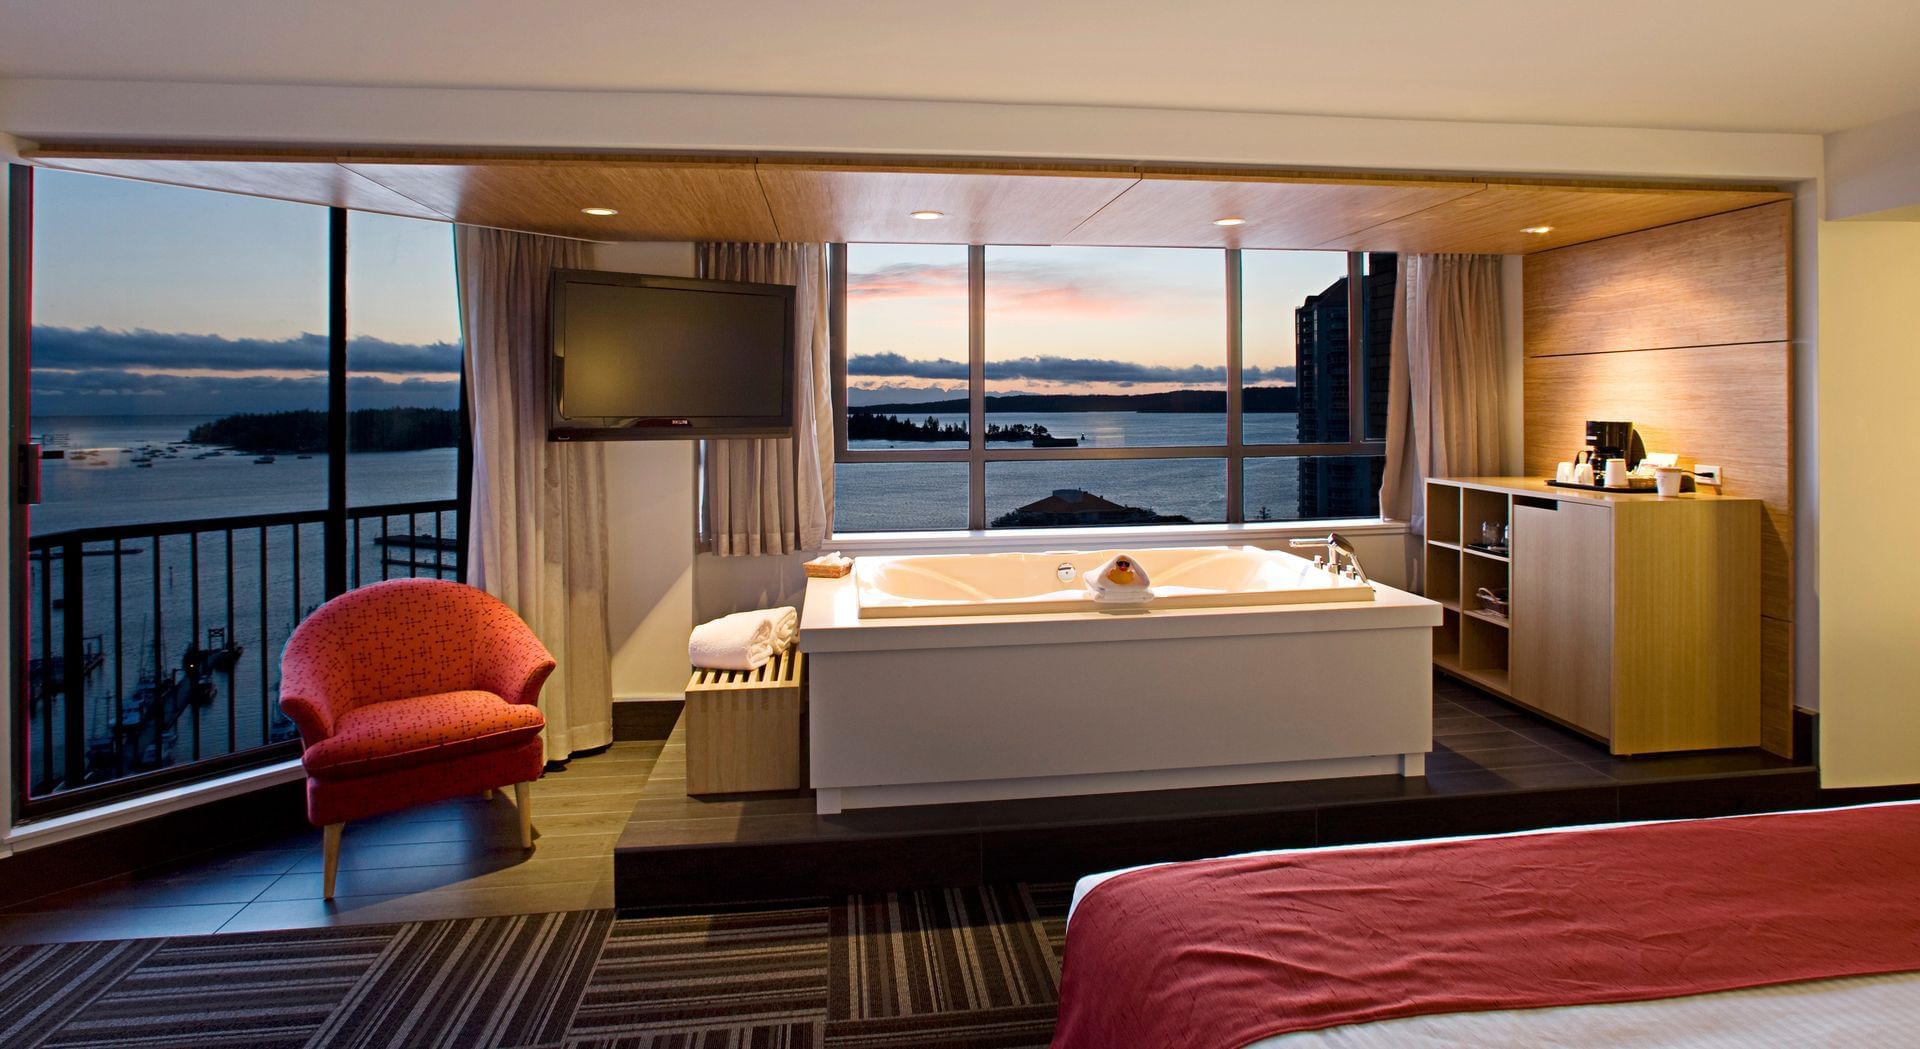 jacuzzi in hotel suite overlooking ocean